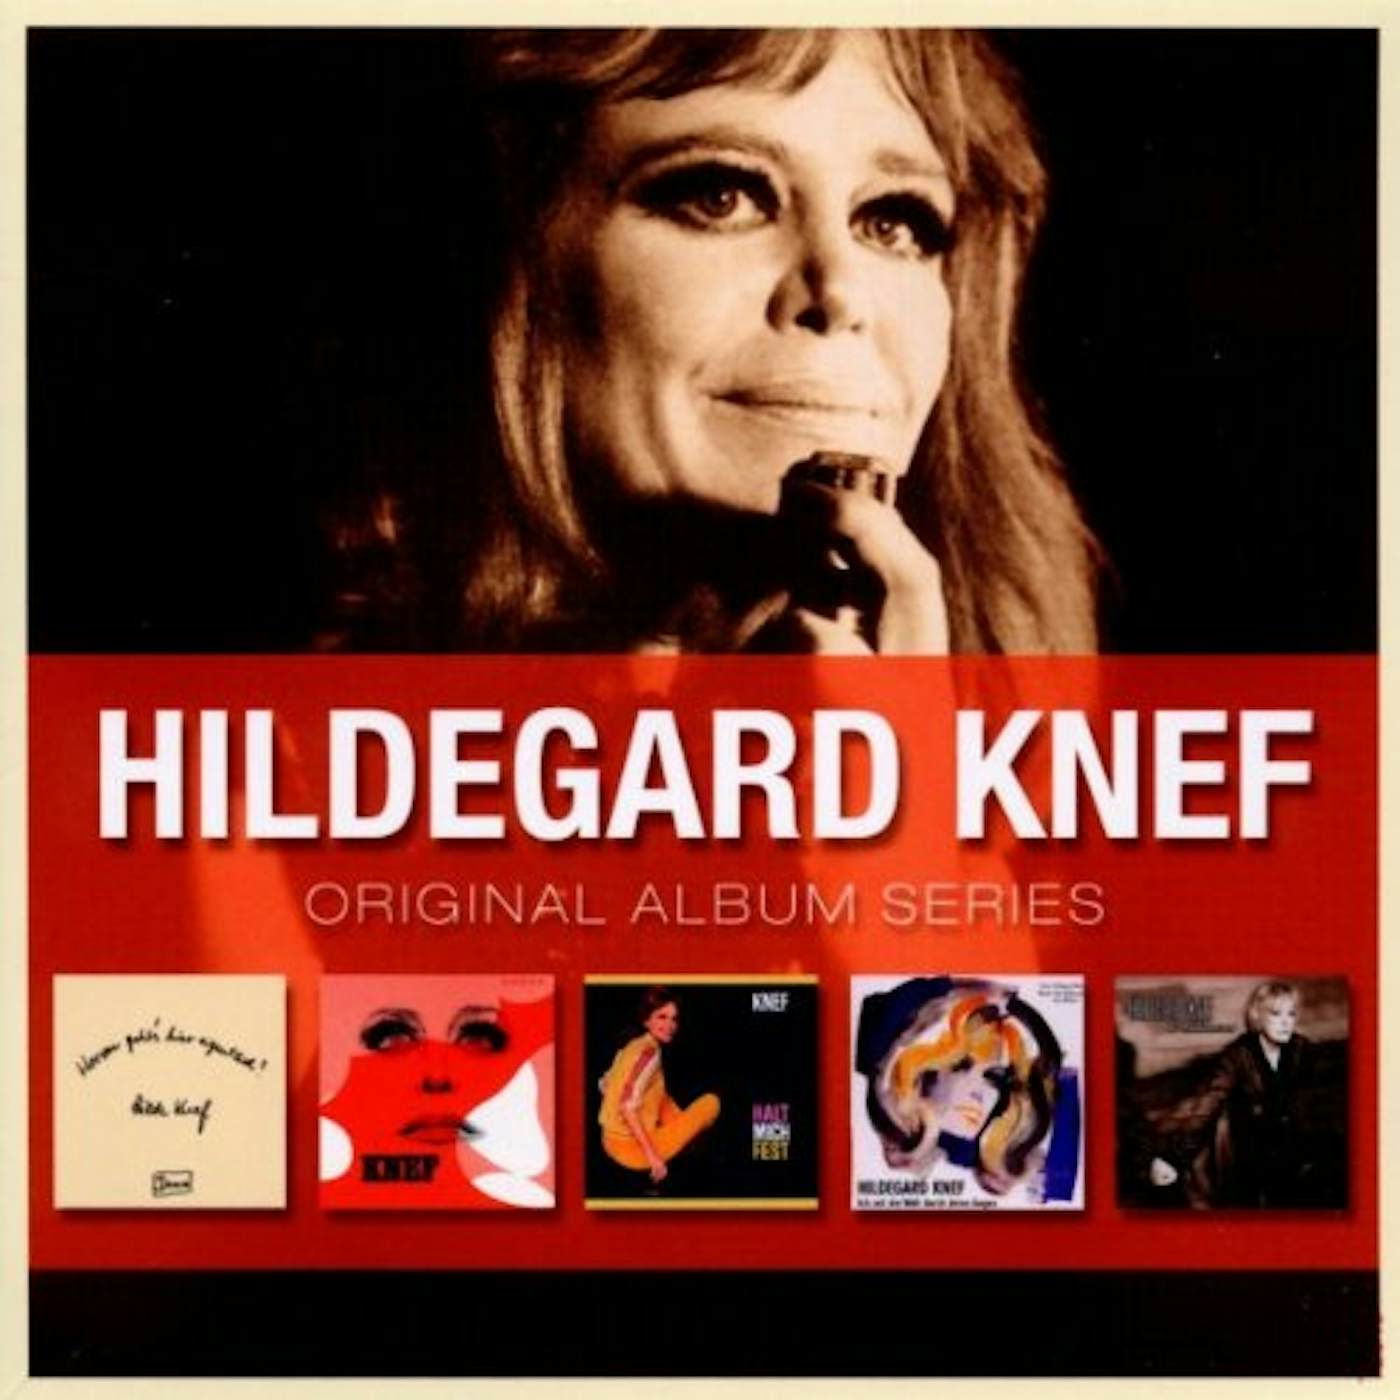 Hildegard Knef ORIGINAL ALBUM SERIES CD